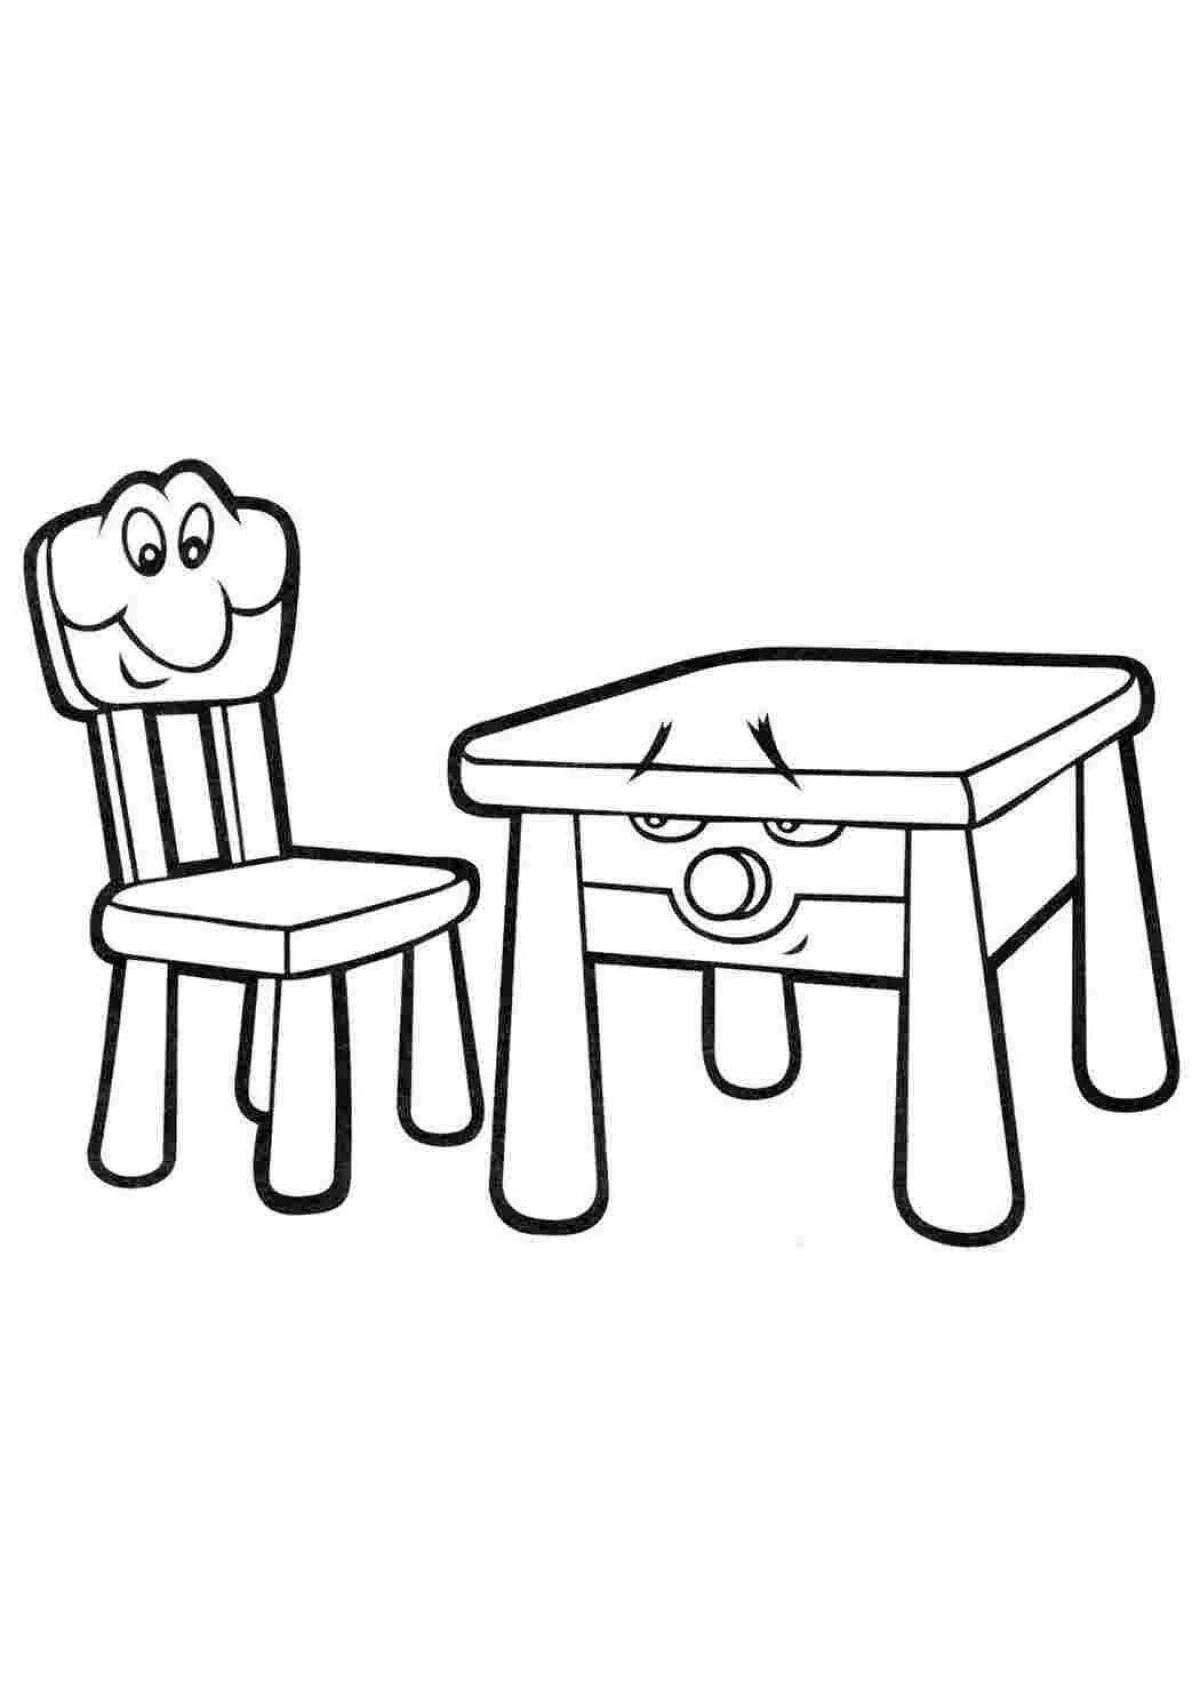 Стол и стул для детей трафарет